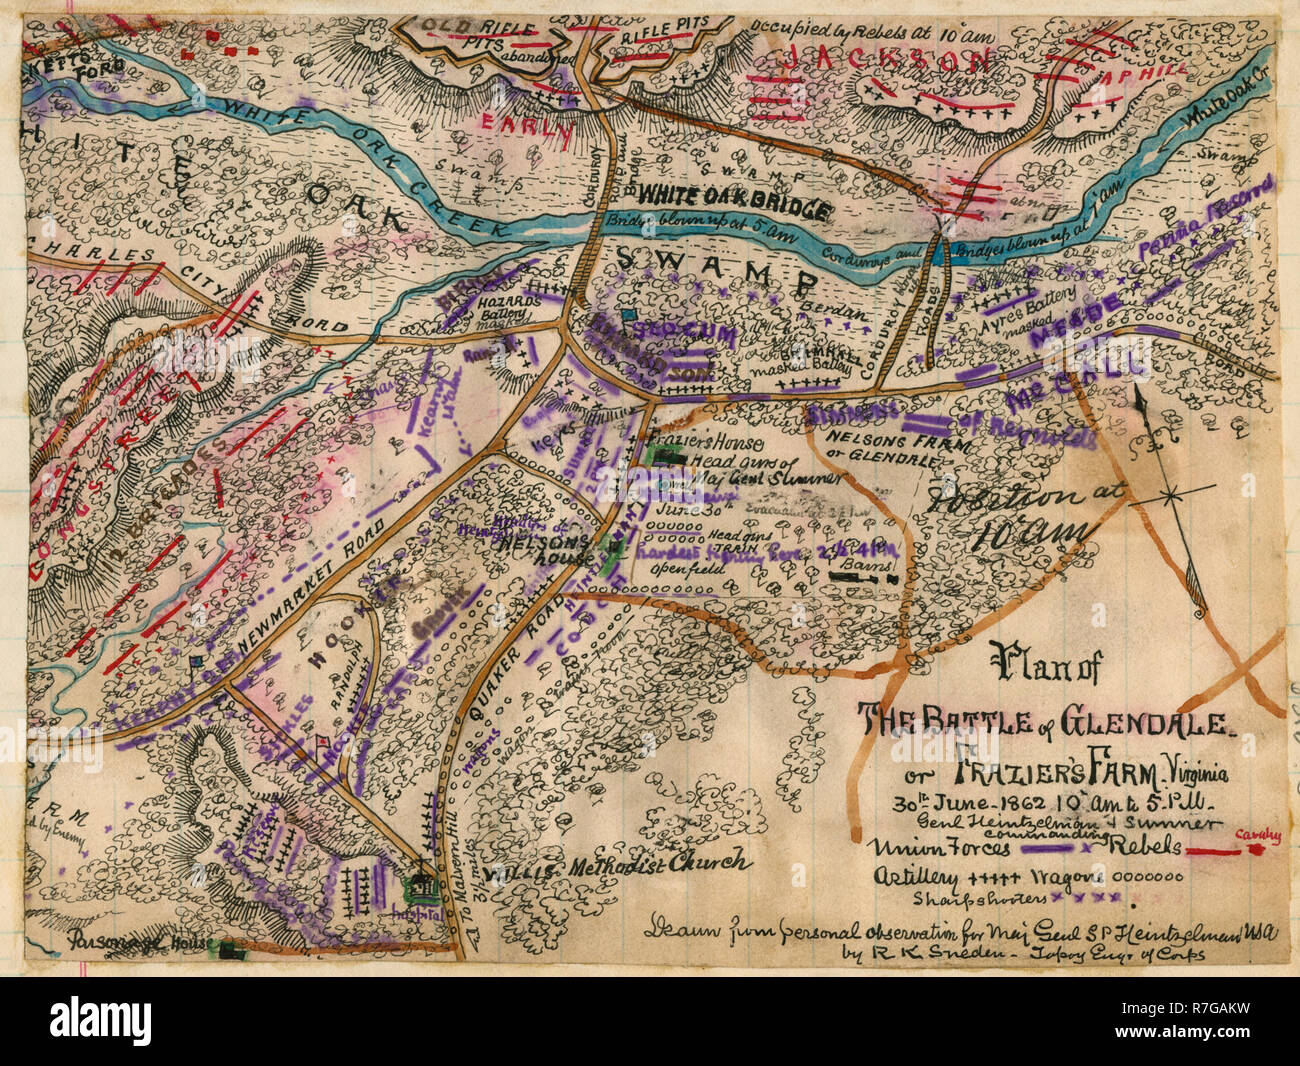 Plan der Schlacht von Glendale oder Frazier's Farm. Virginia. 30 Juni 1862 10:00 bis 17:00 Uhr Genl Heintzelman und Sumner befehlen. Amerikanischer Bürgerkrieg Stockfoto